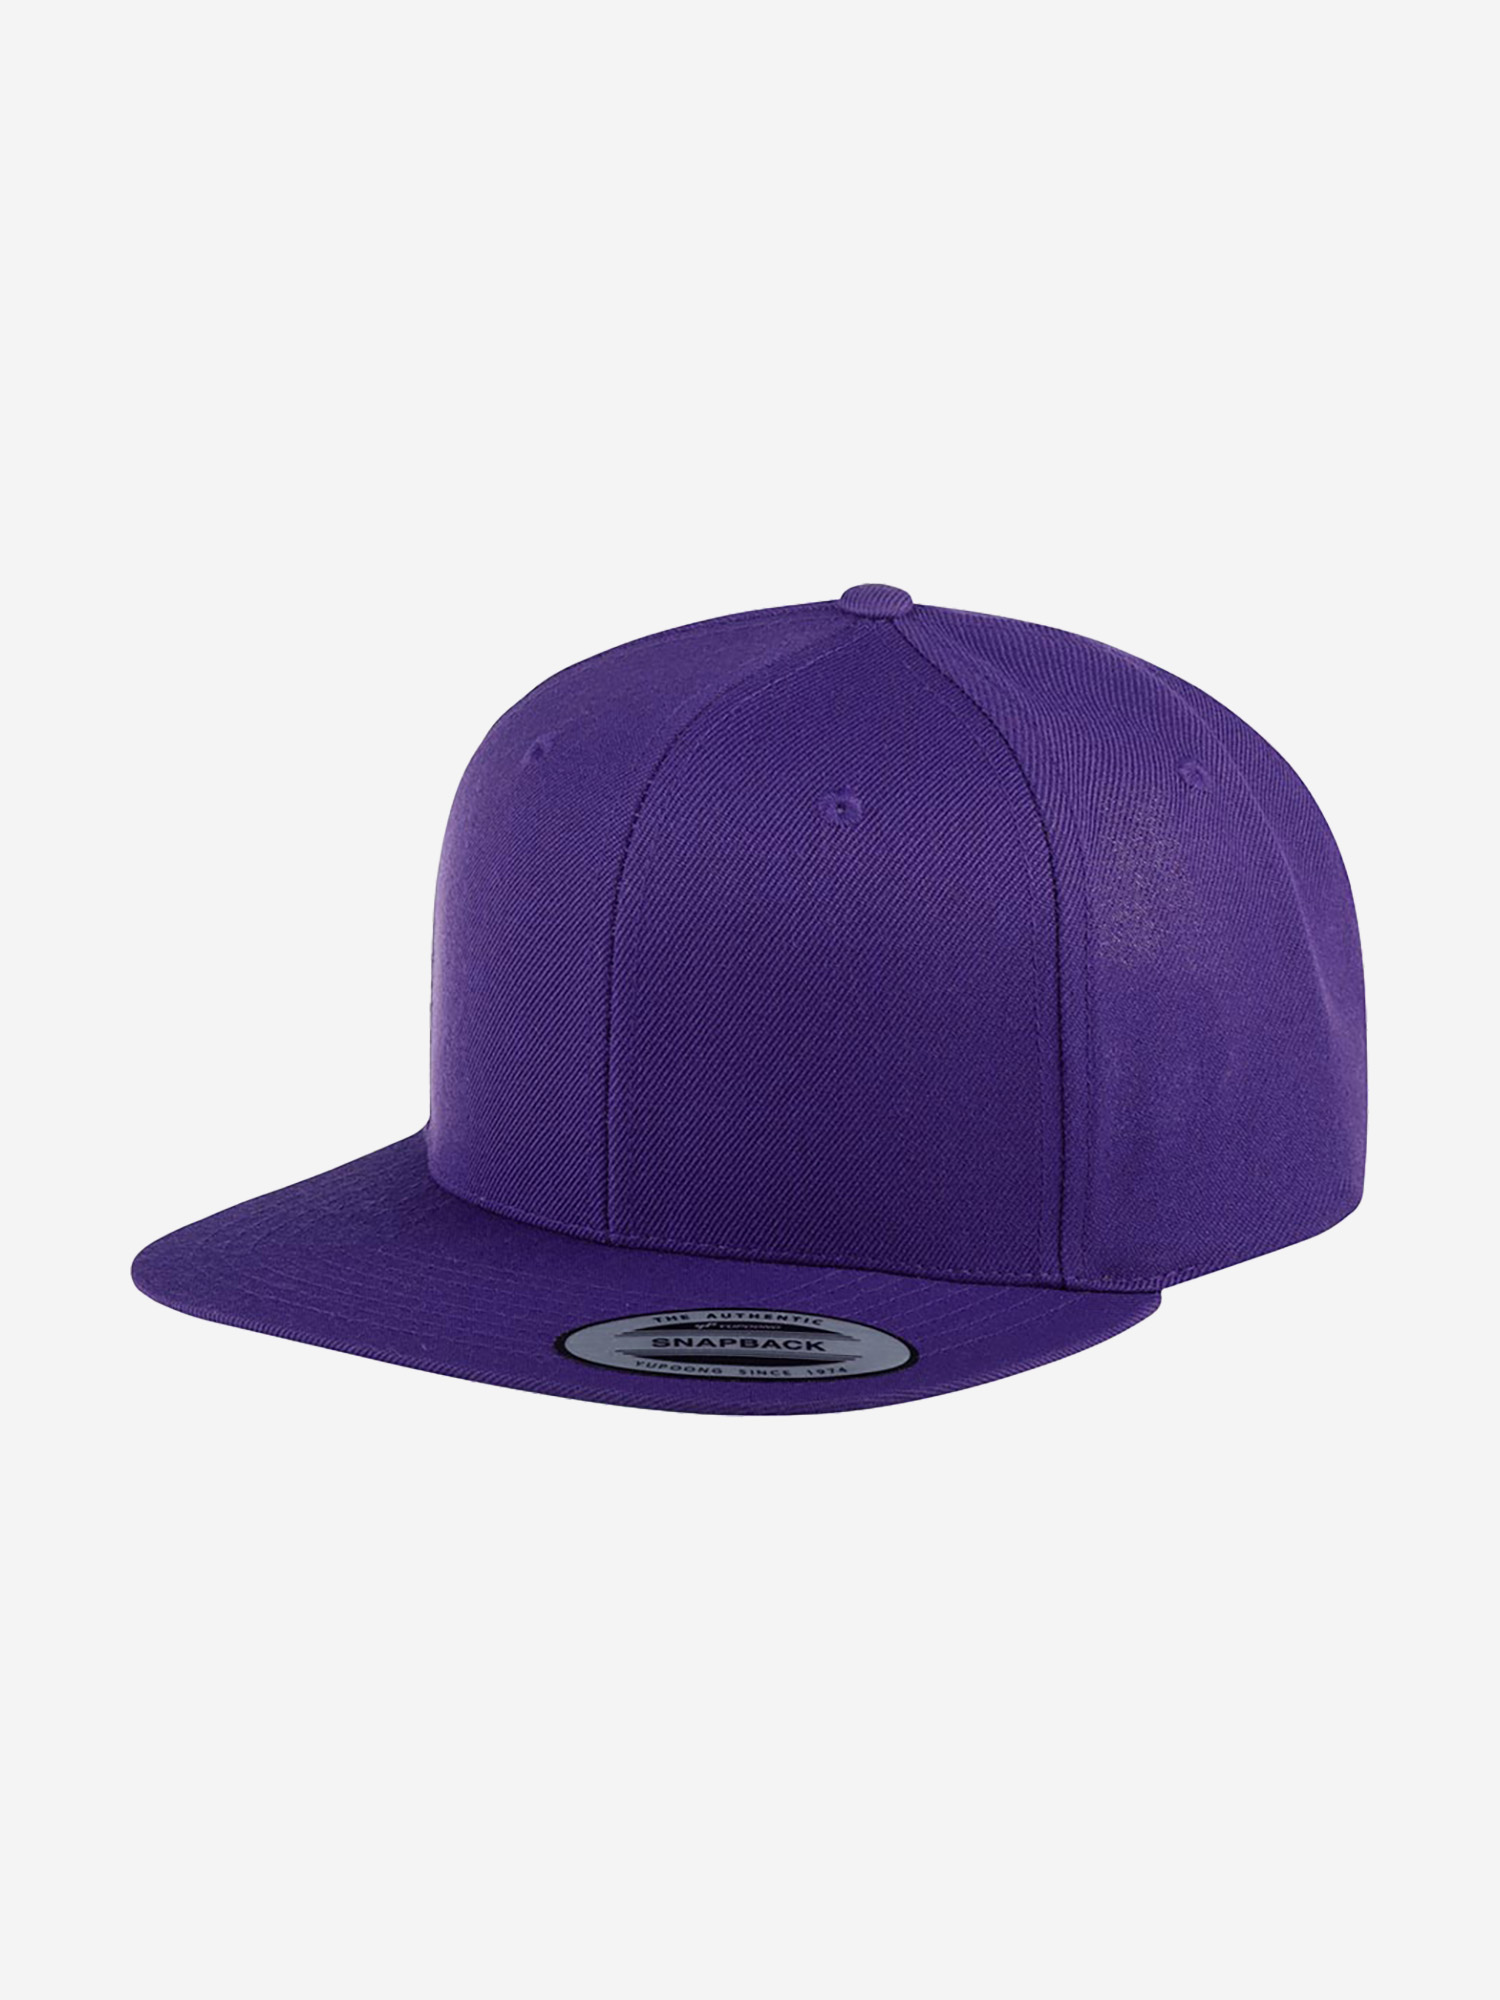 Бейсболка с прямым козырьком FLEXFIT 6089M (фиолетовый), Фиолетовый